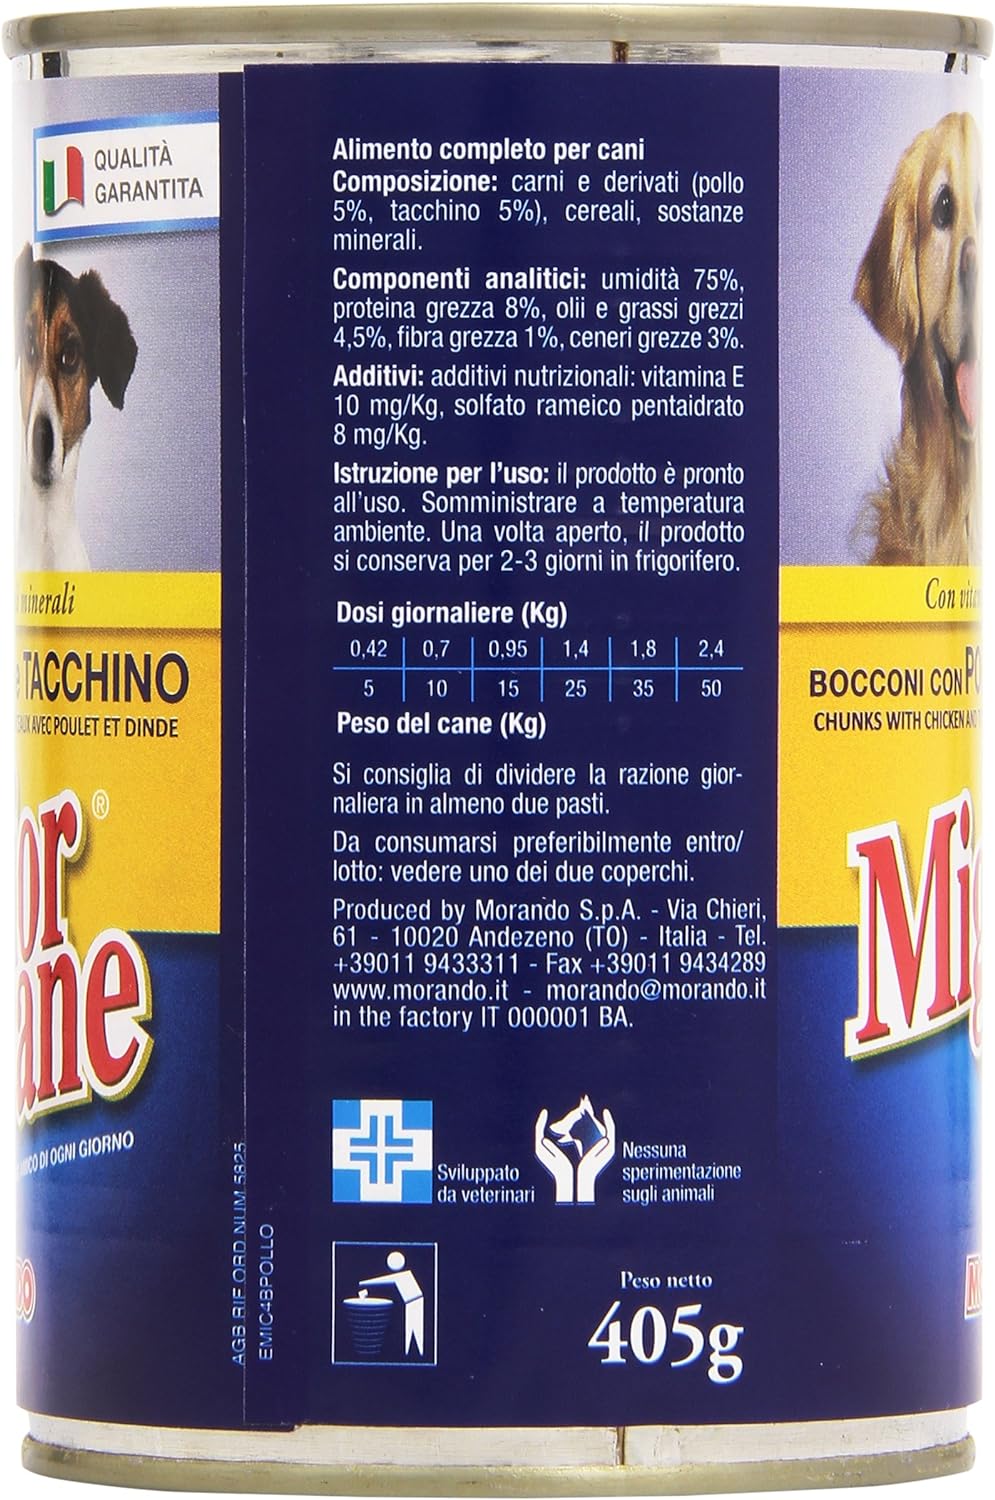 Migliorcane - Alimento Completo per Cani, Bocconi con Pollo e Tacchino - 12 latte da 405 g [4860 g]